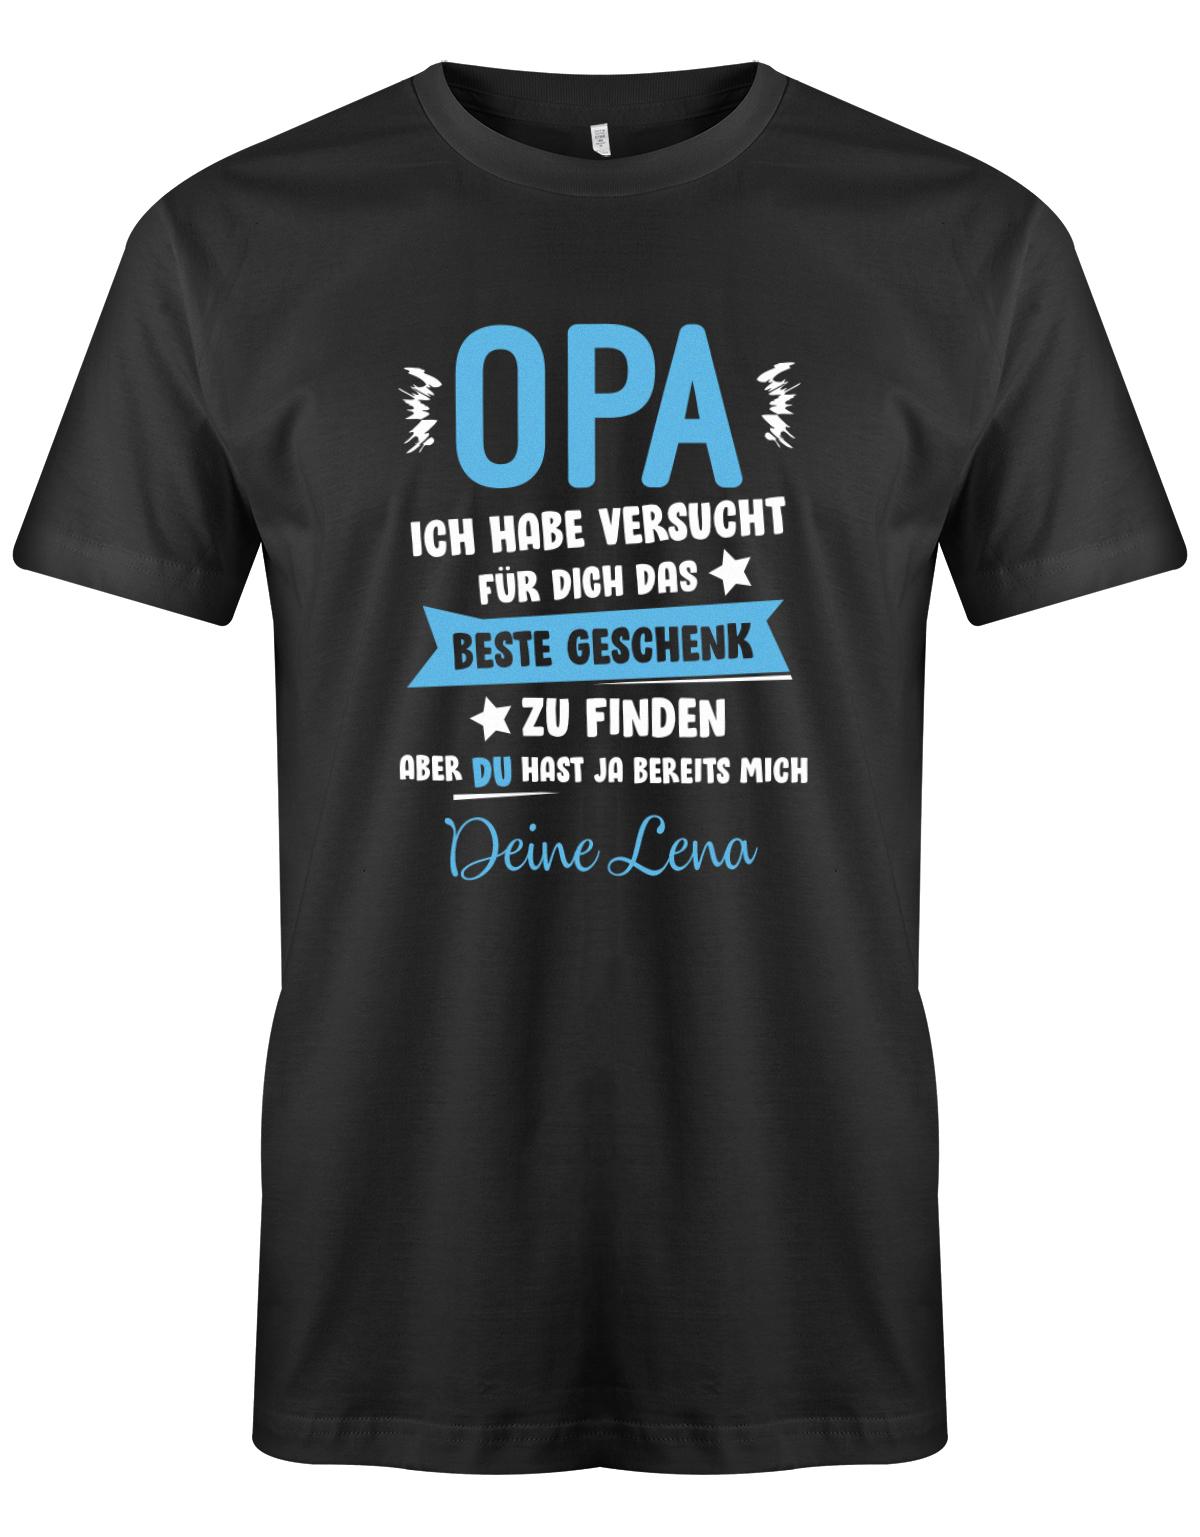 Opa Shirt personalisiert - Opa ich habe versucht, das beste Geschenk für dich zu finden, aber du hast ja bereits mich. Name vom Enkel.  Schwarz